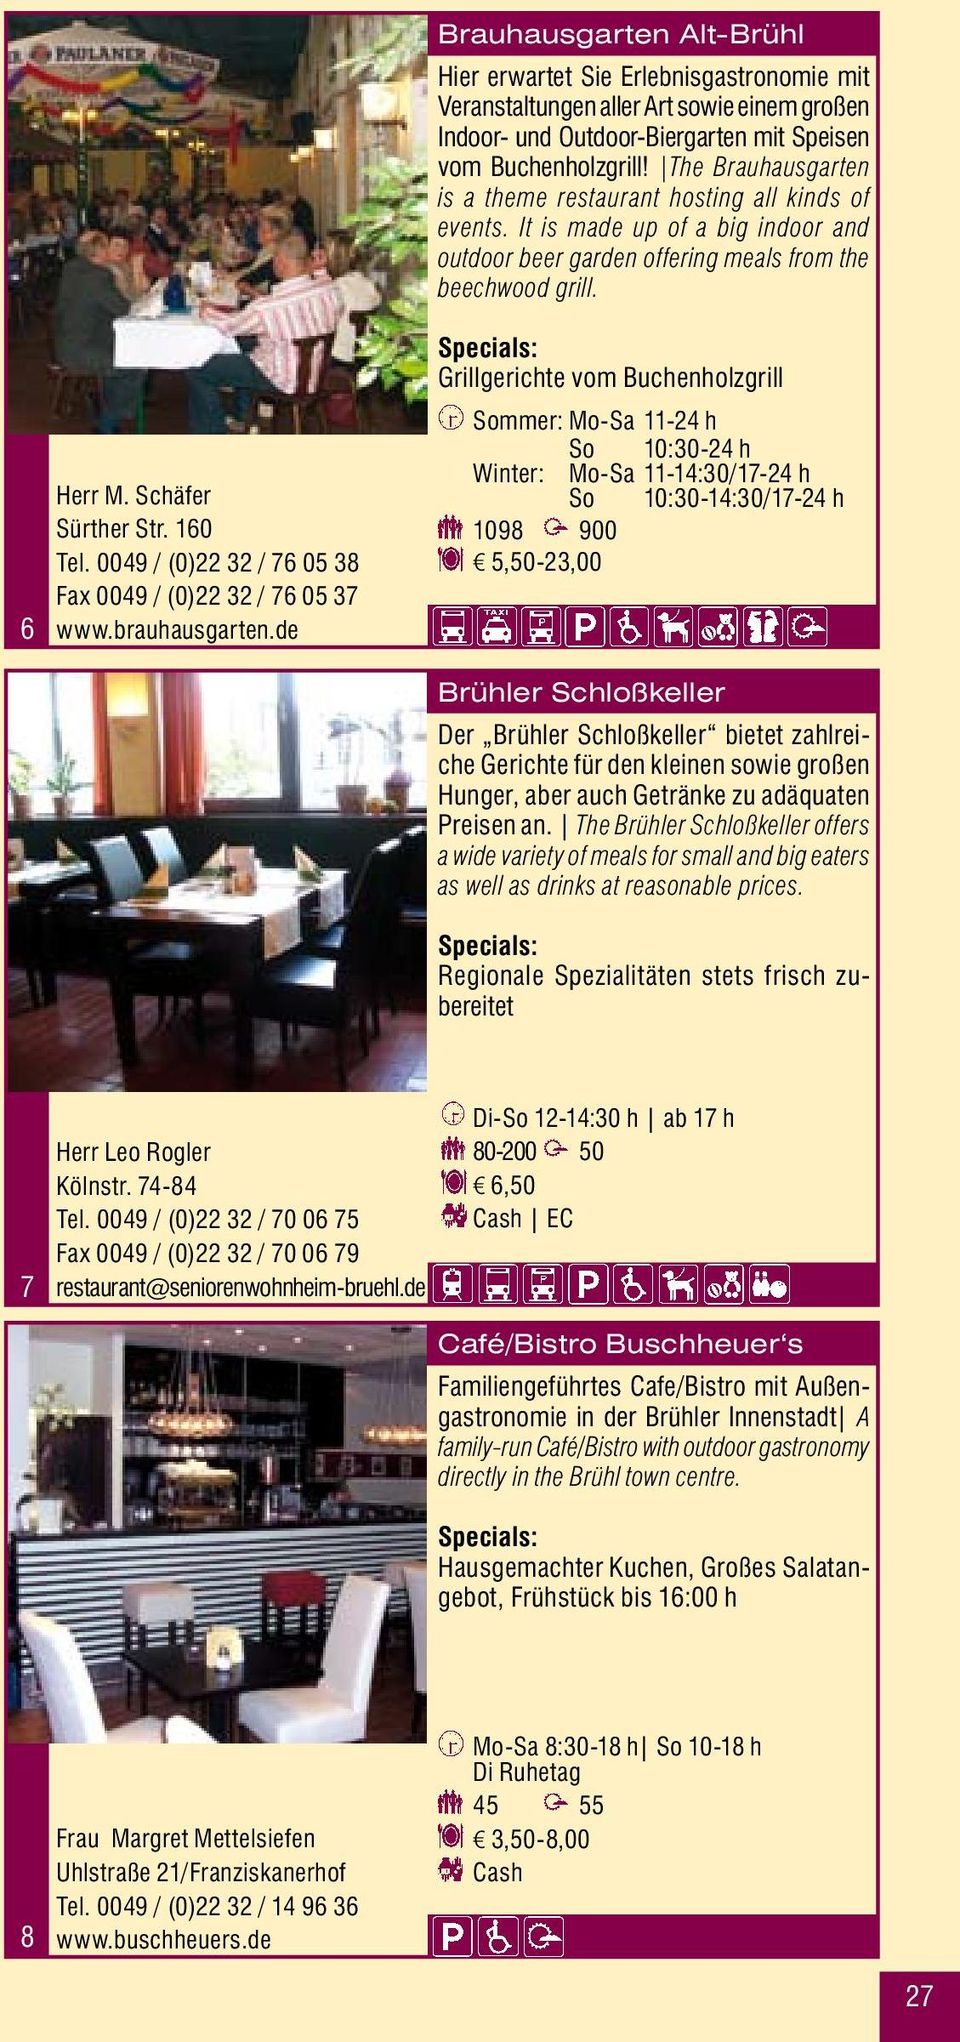 Bruhl Schlemmen Schlummern In Bruhl Gastro Und Unterkunfts Guide 2007 2008 Resting Dining In Bruhl Pdf Kostenfreier Download